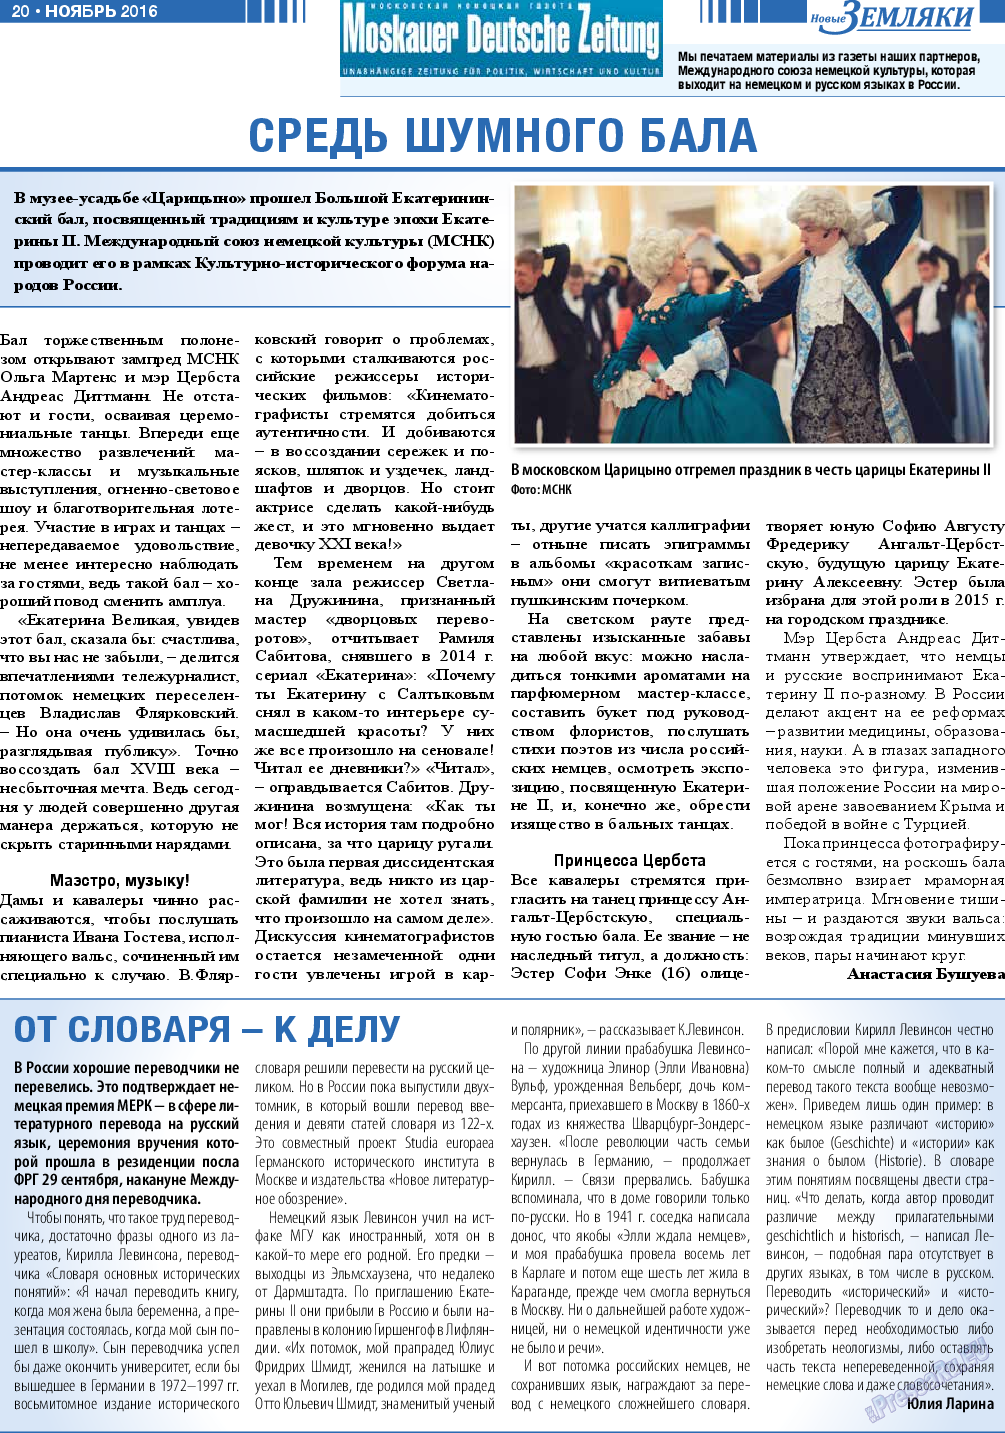 Новые Земляки, газета. 2016 №11 стр.20